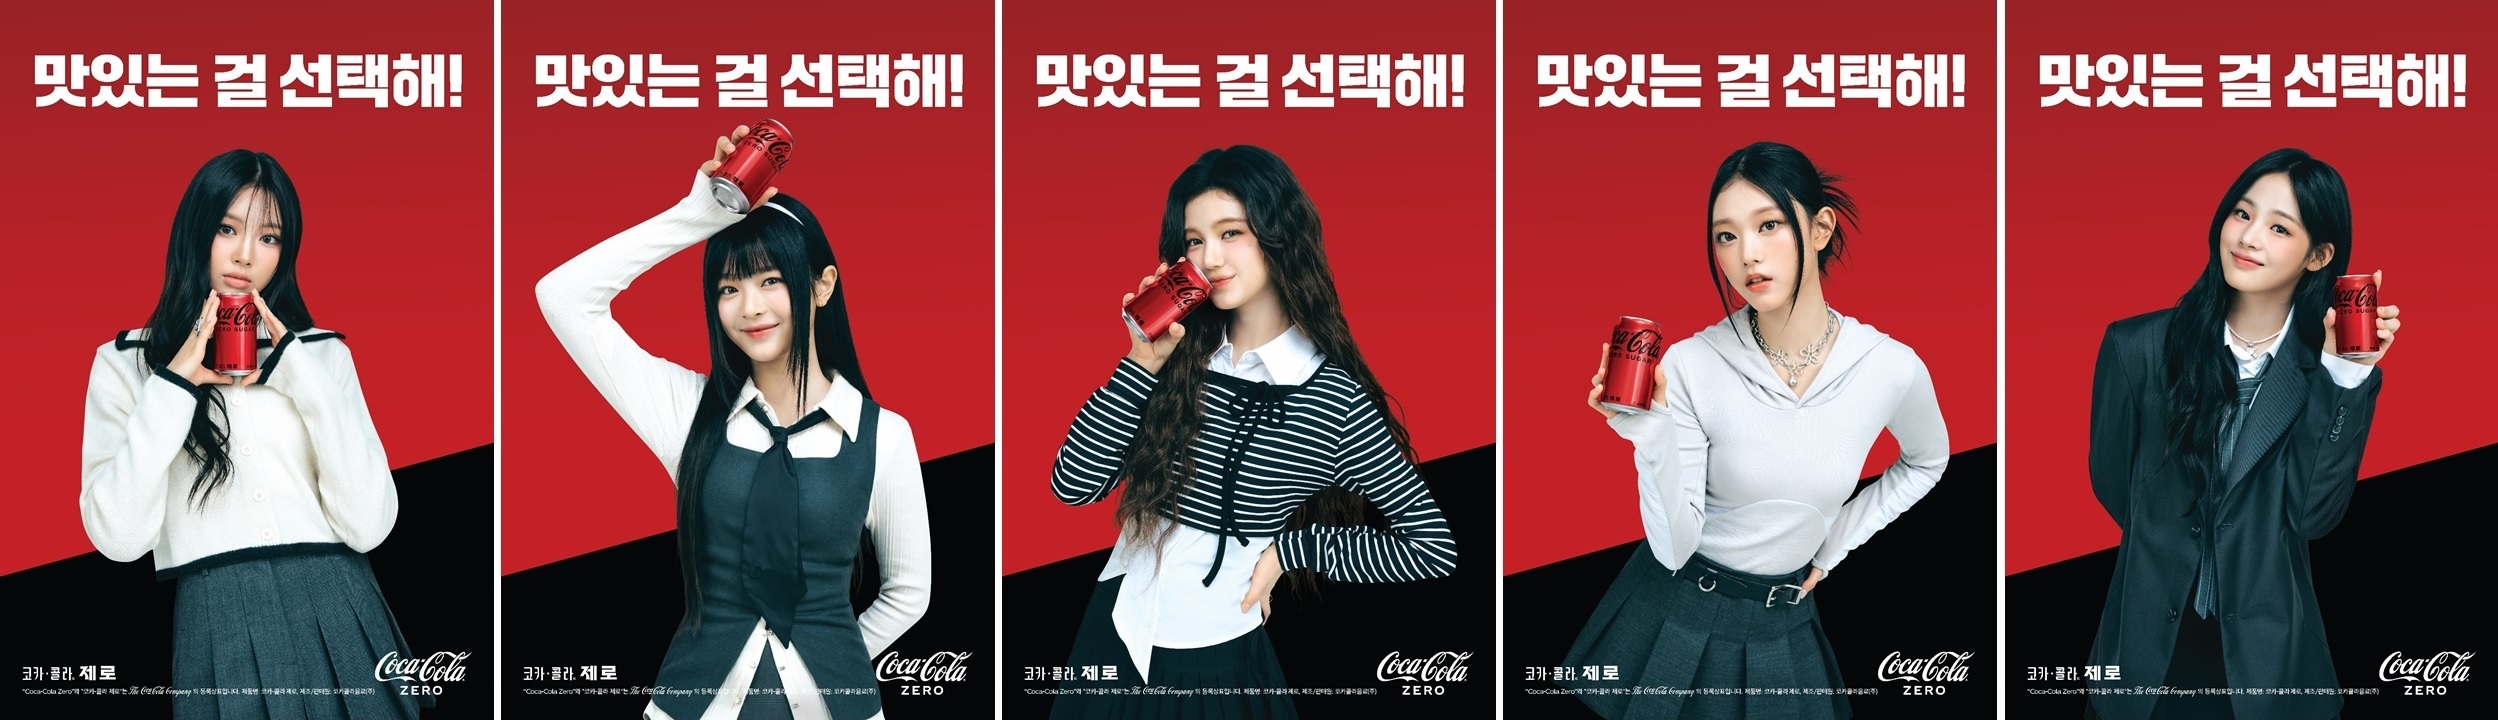 [생활경제 이슈] 코카-콜라, ‘코카-콜라 제로’와 ‘뉴진스’ 멤버 별 화보컷 공개 外